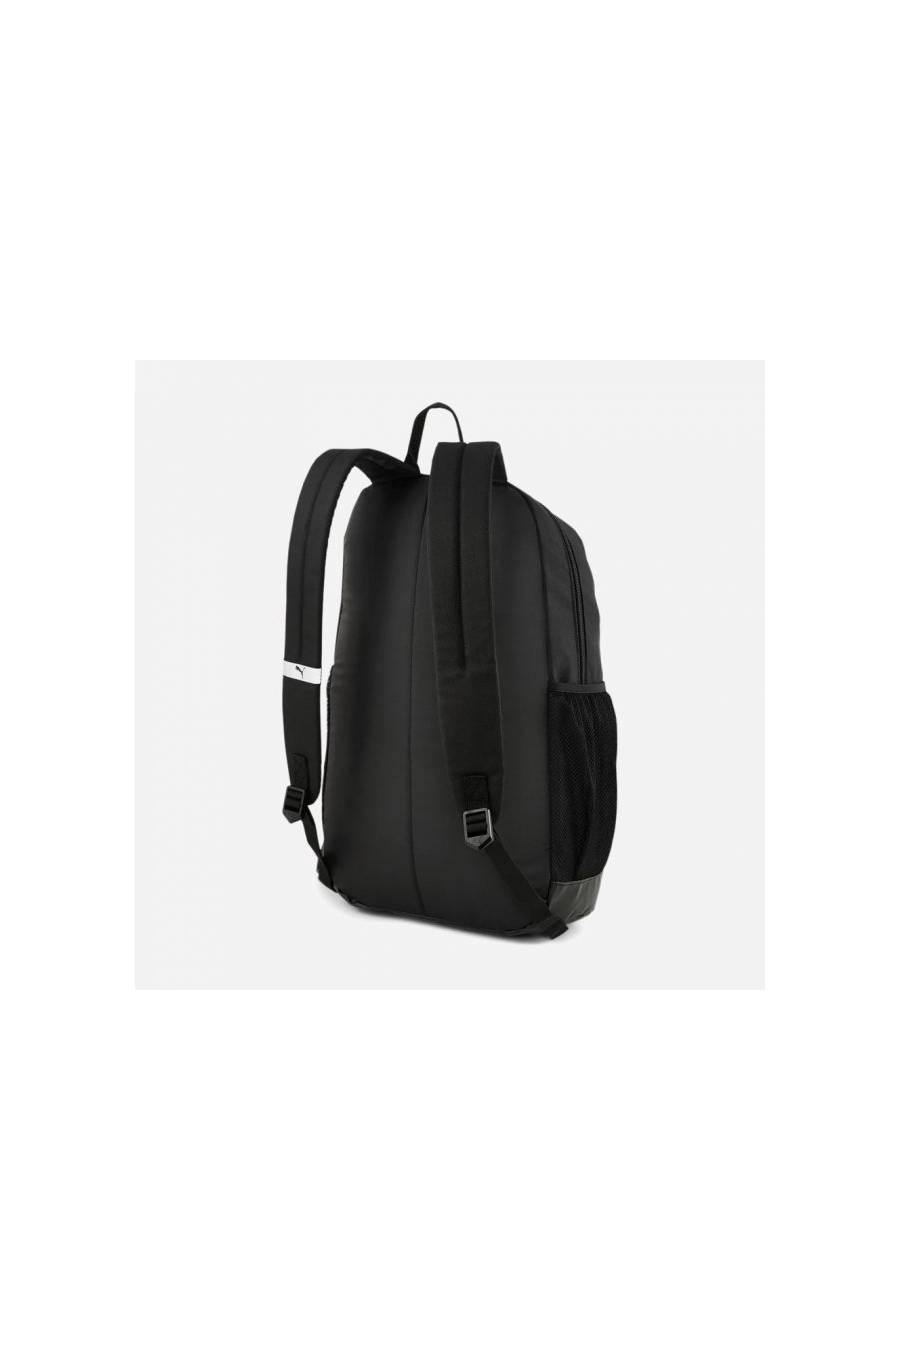 Mochila Puma Plus Backpack 2 - 07839101